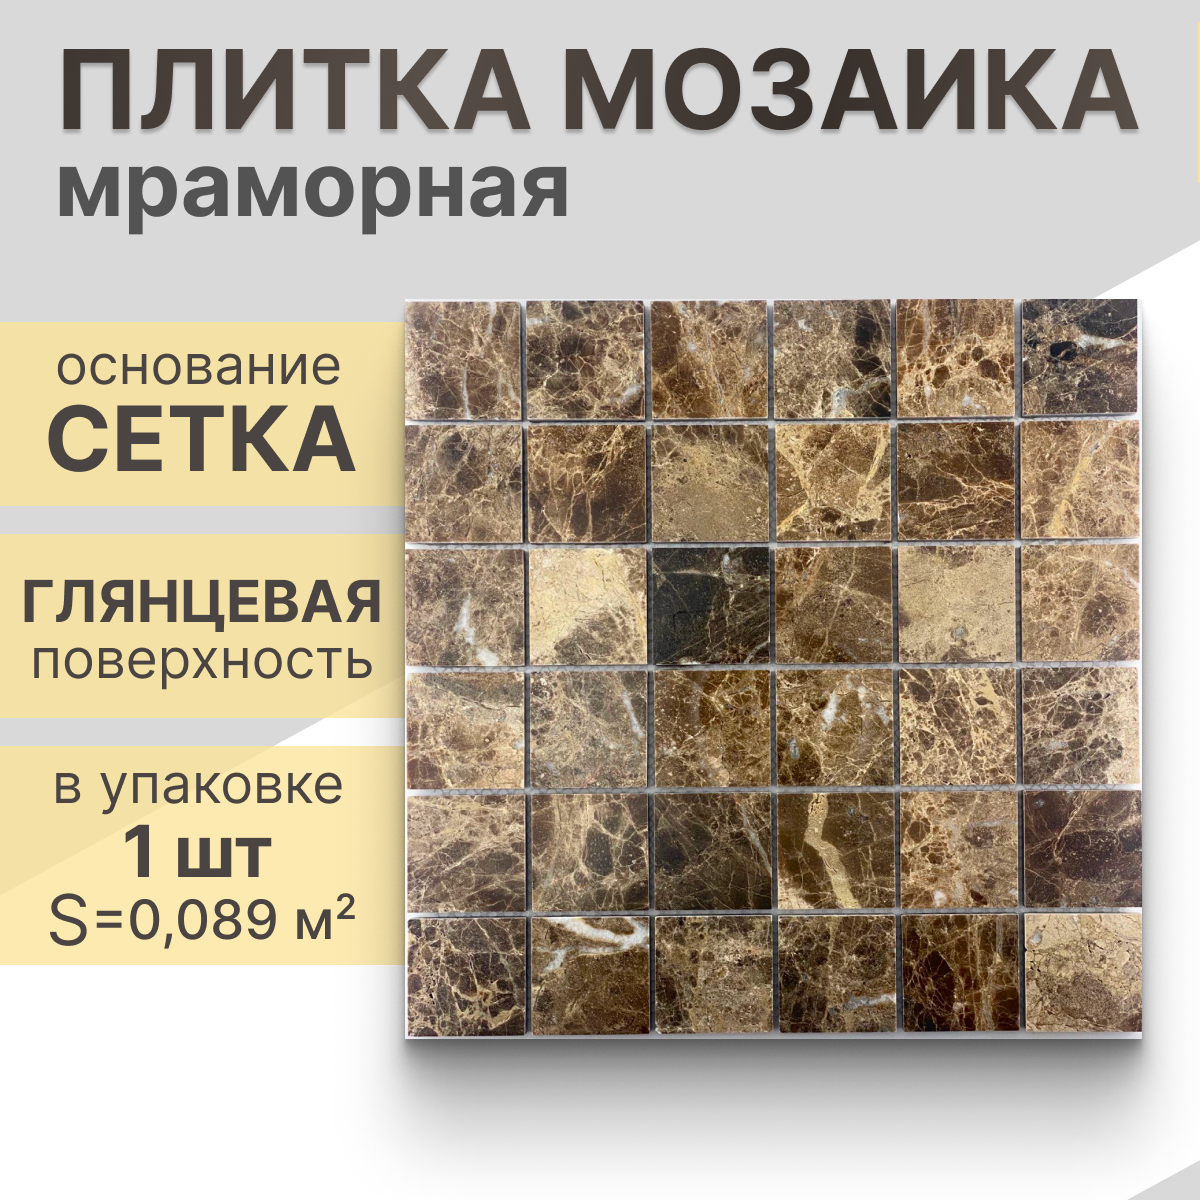 Мозаика (мрамор) NS mosaic Kp-757 29.8X29,8 см 1 шт (0,089 м²)